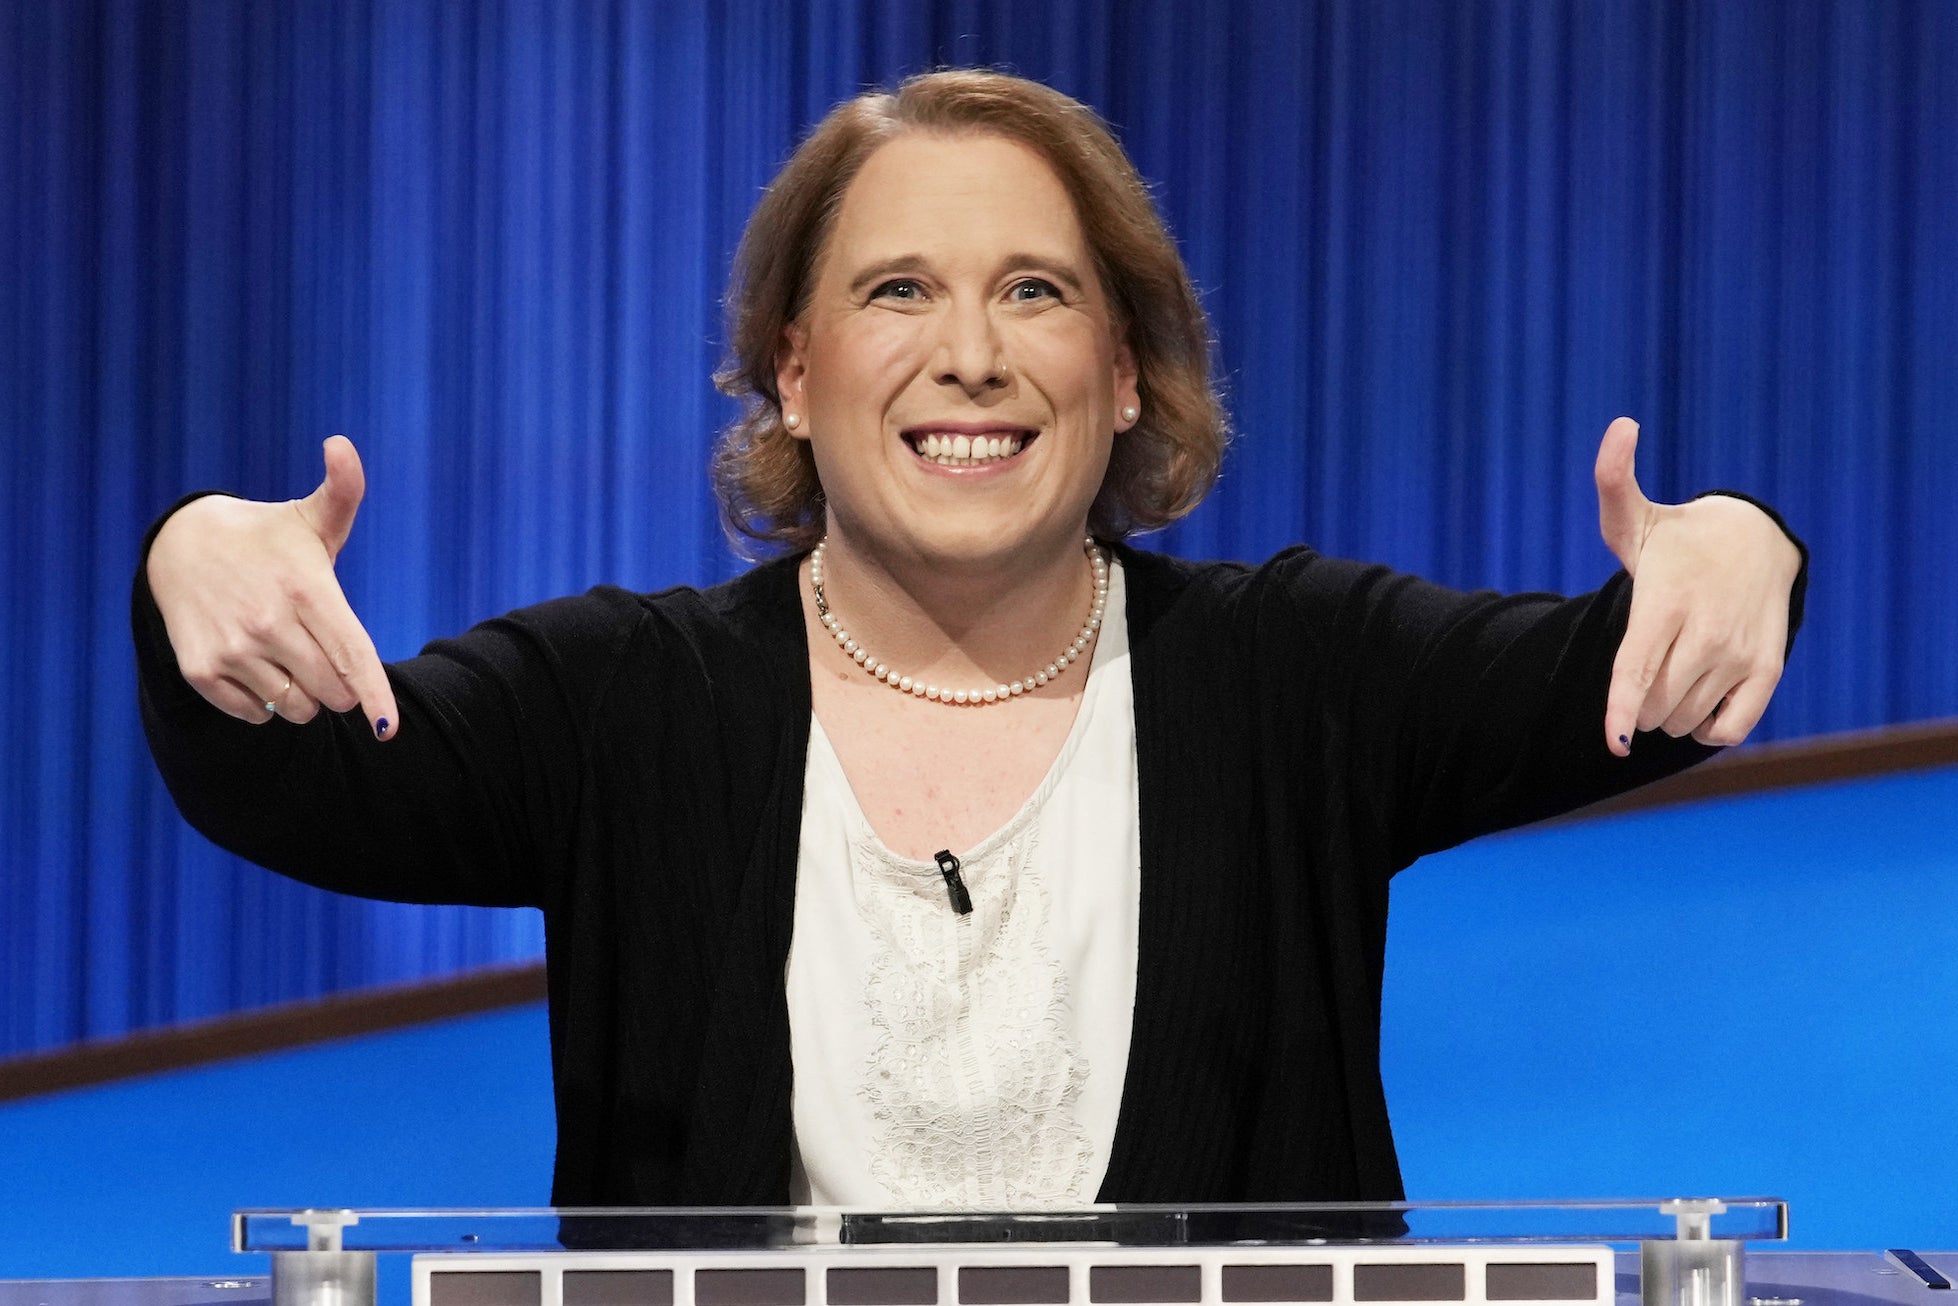 Amy Schneider Said Her Greatest "Jeopardy" Achievement Was Transgender Media Exposure